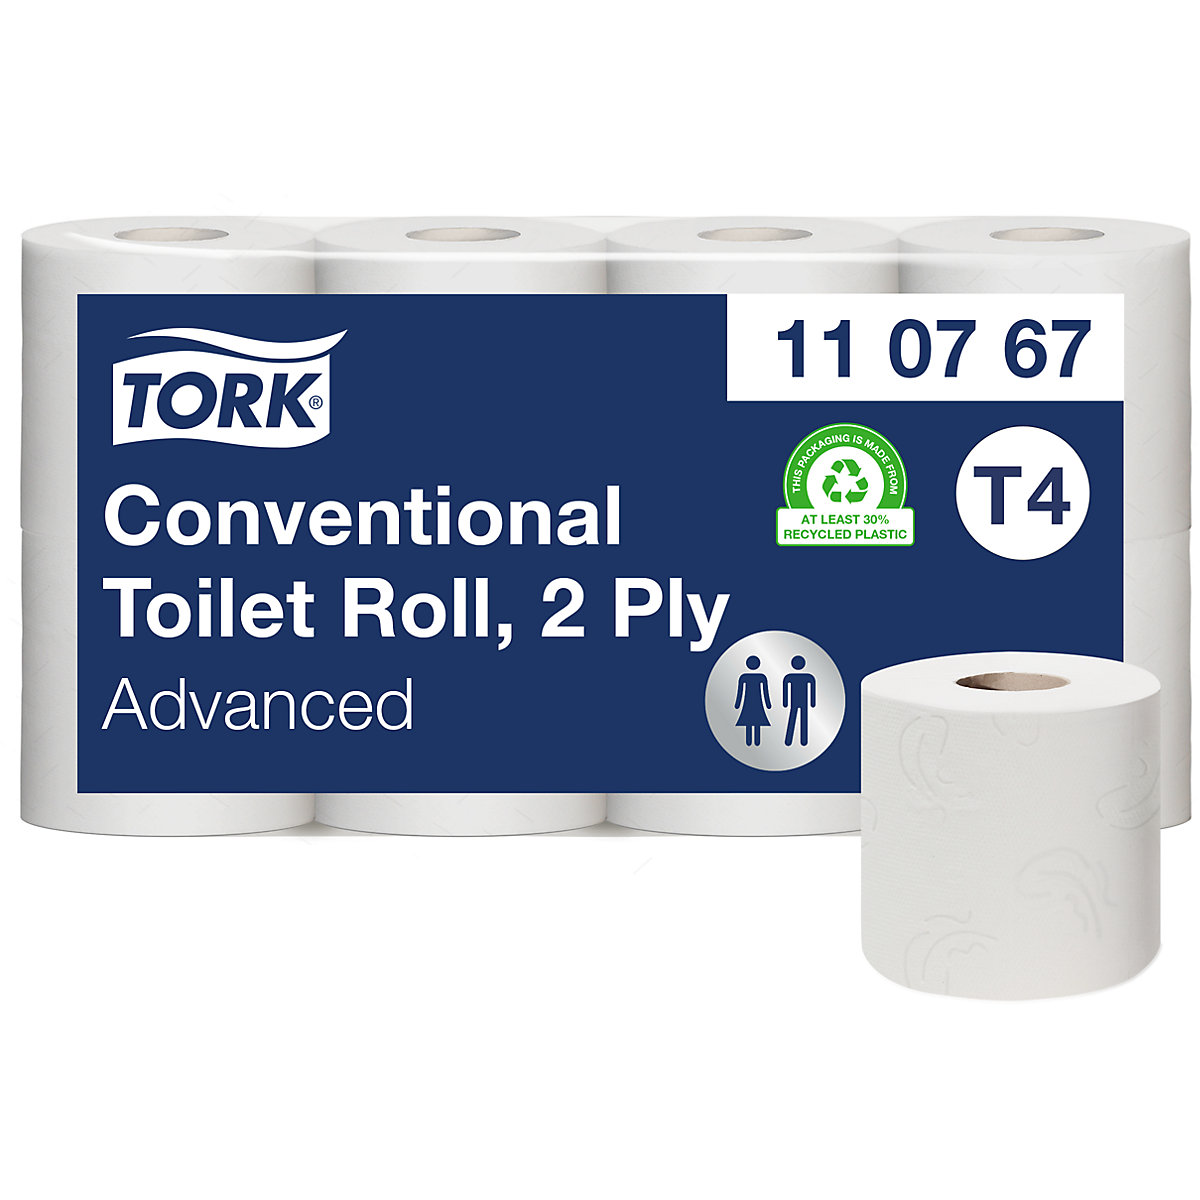 Toaletni papir v majhnih rolah, gospodinjska rola – TORK